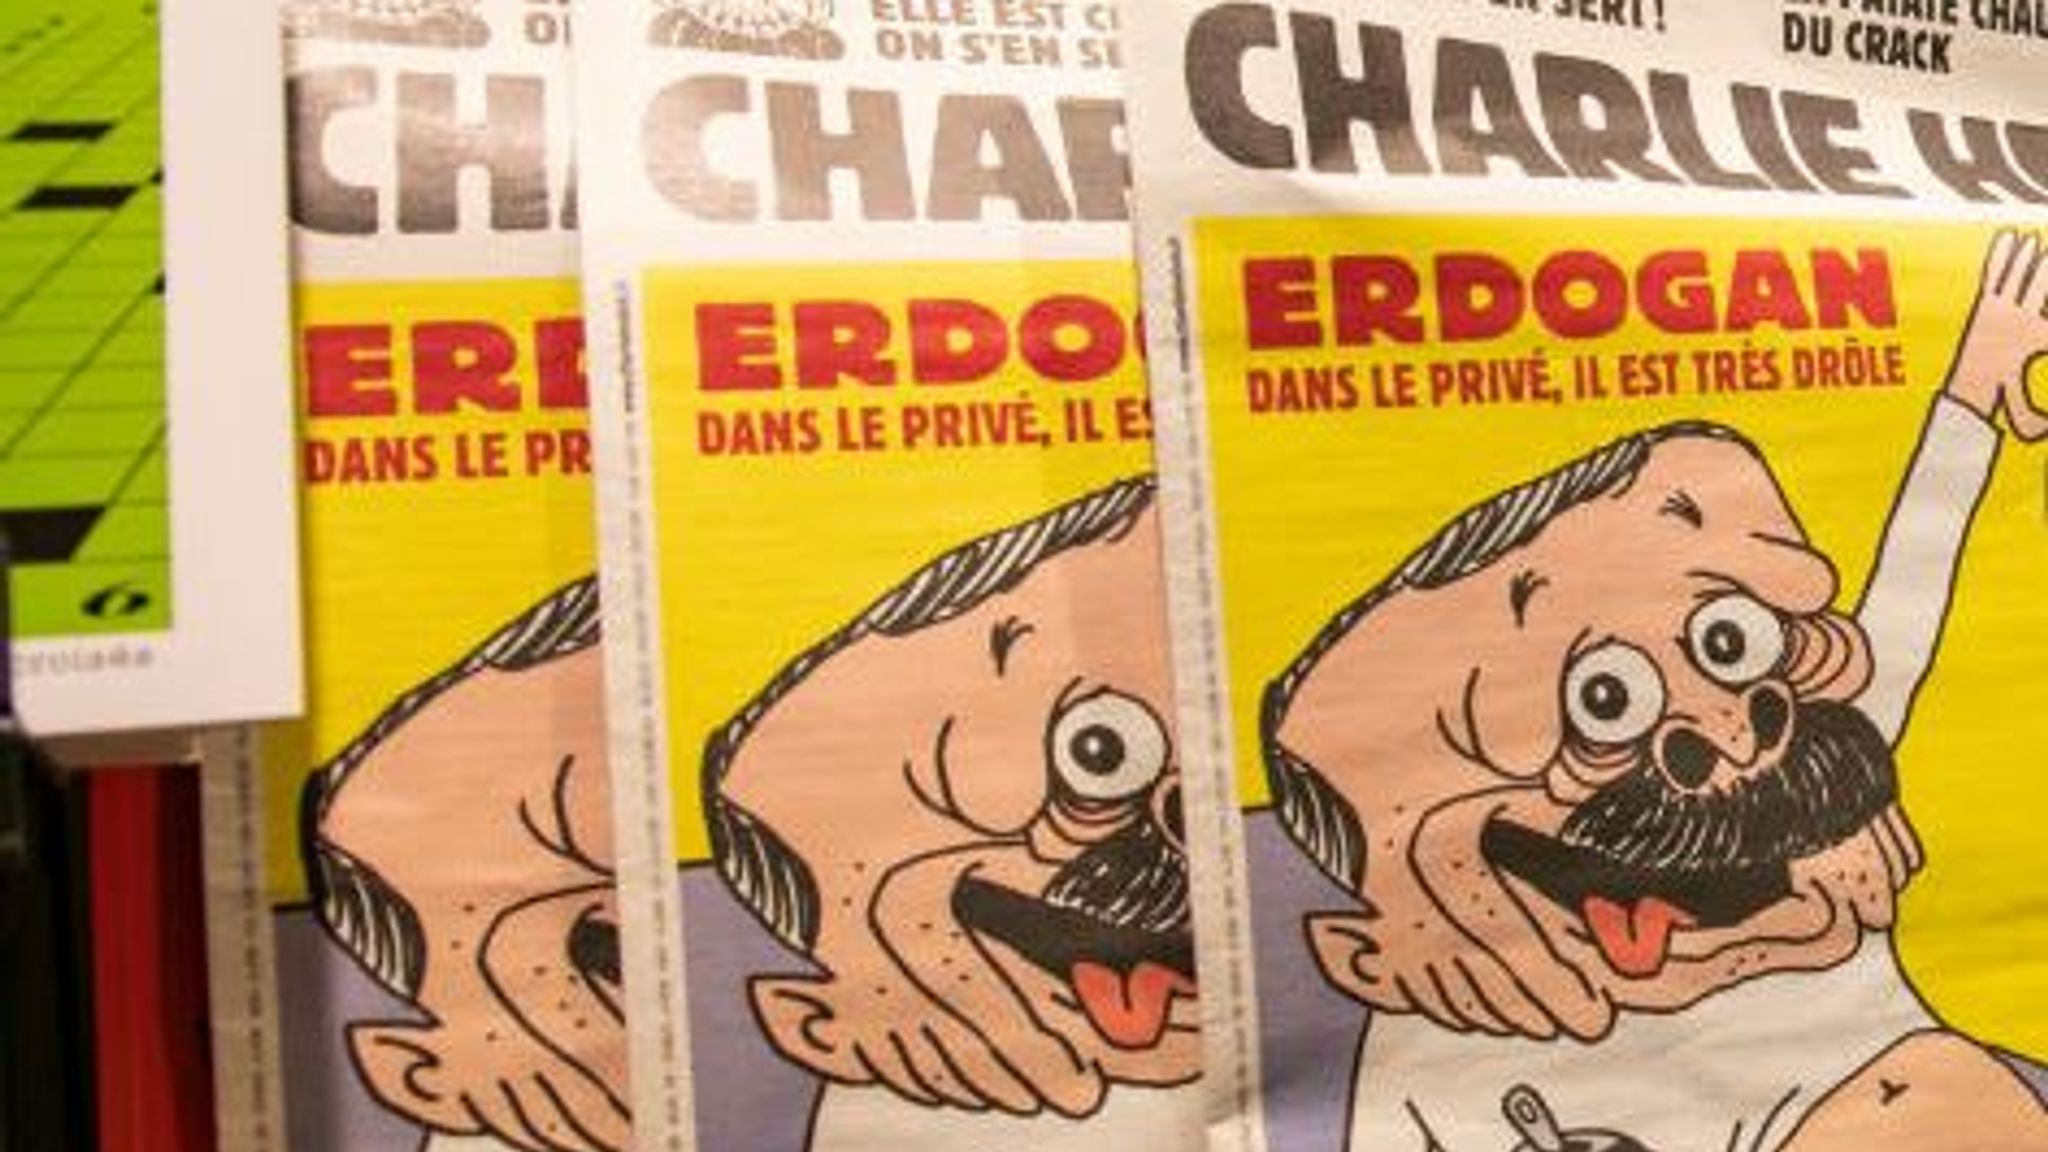 Δίωξη από Τουρκικό Δικαστήριο σε τέσσερις συνεργάτες του γαλλικού σατιρικού περιοδικού Charlie Hebdo